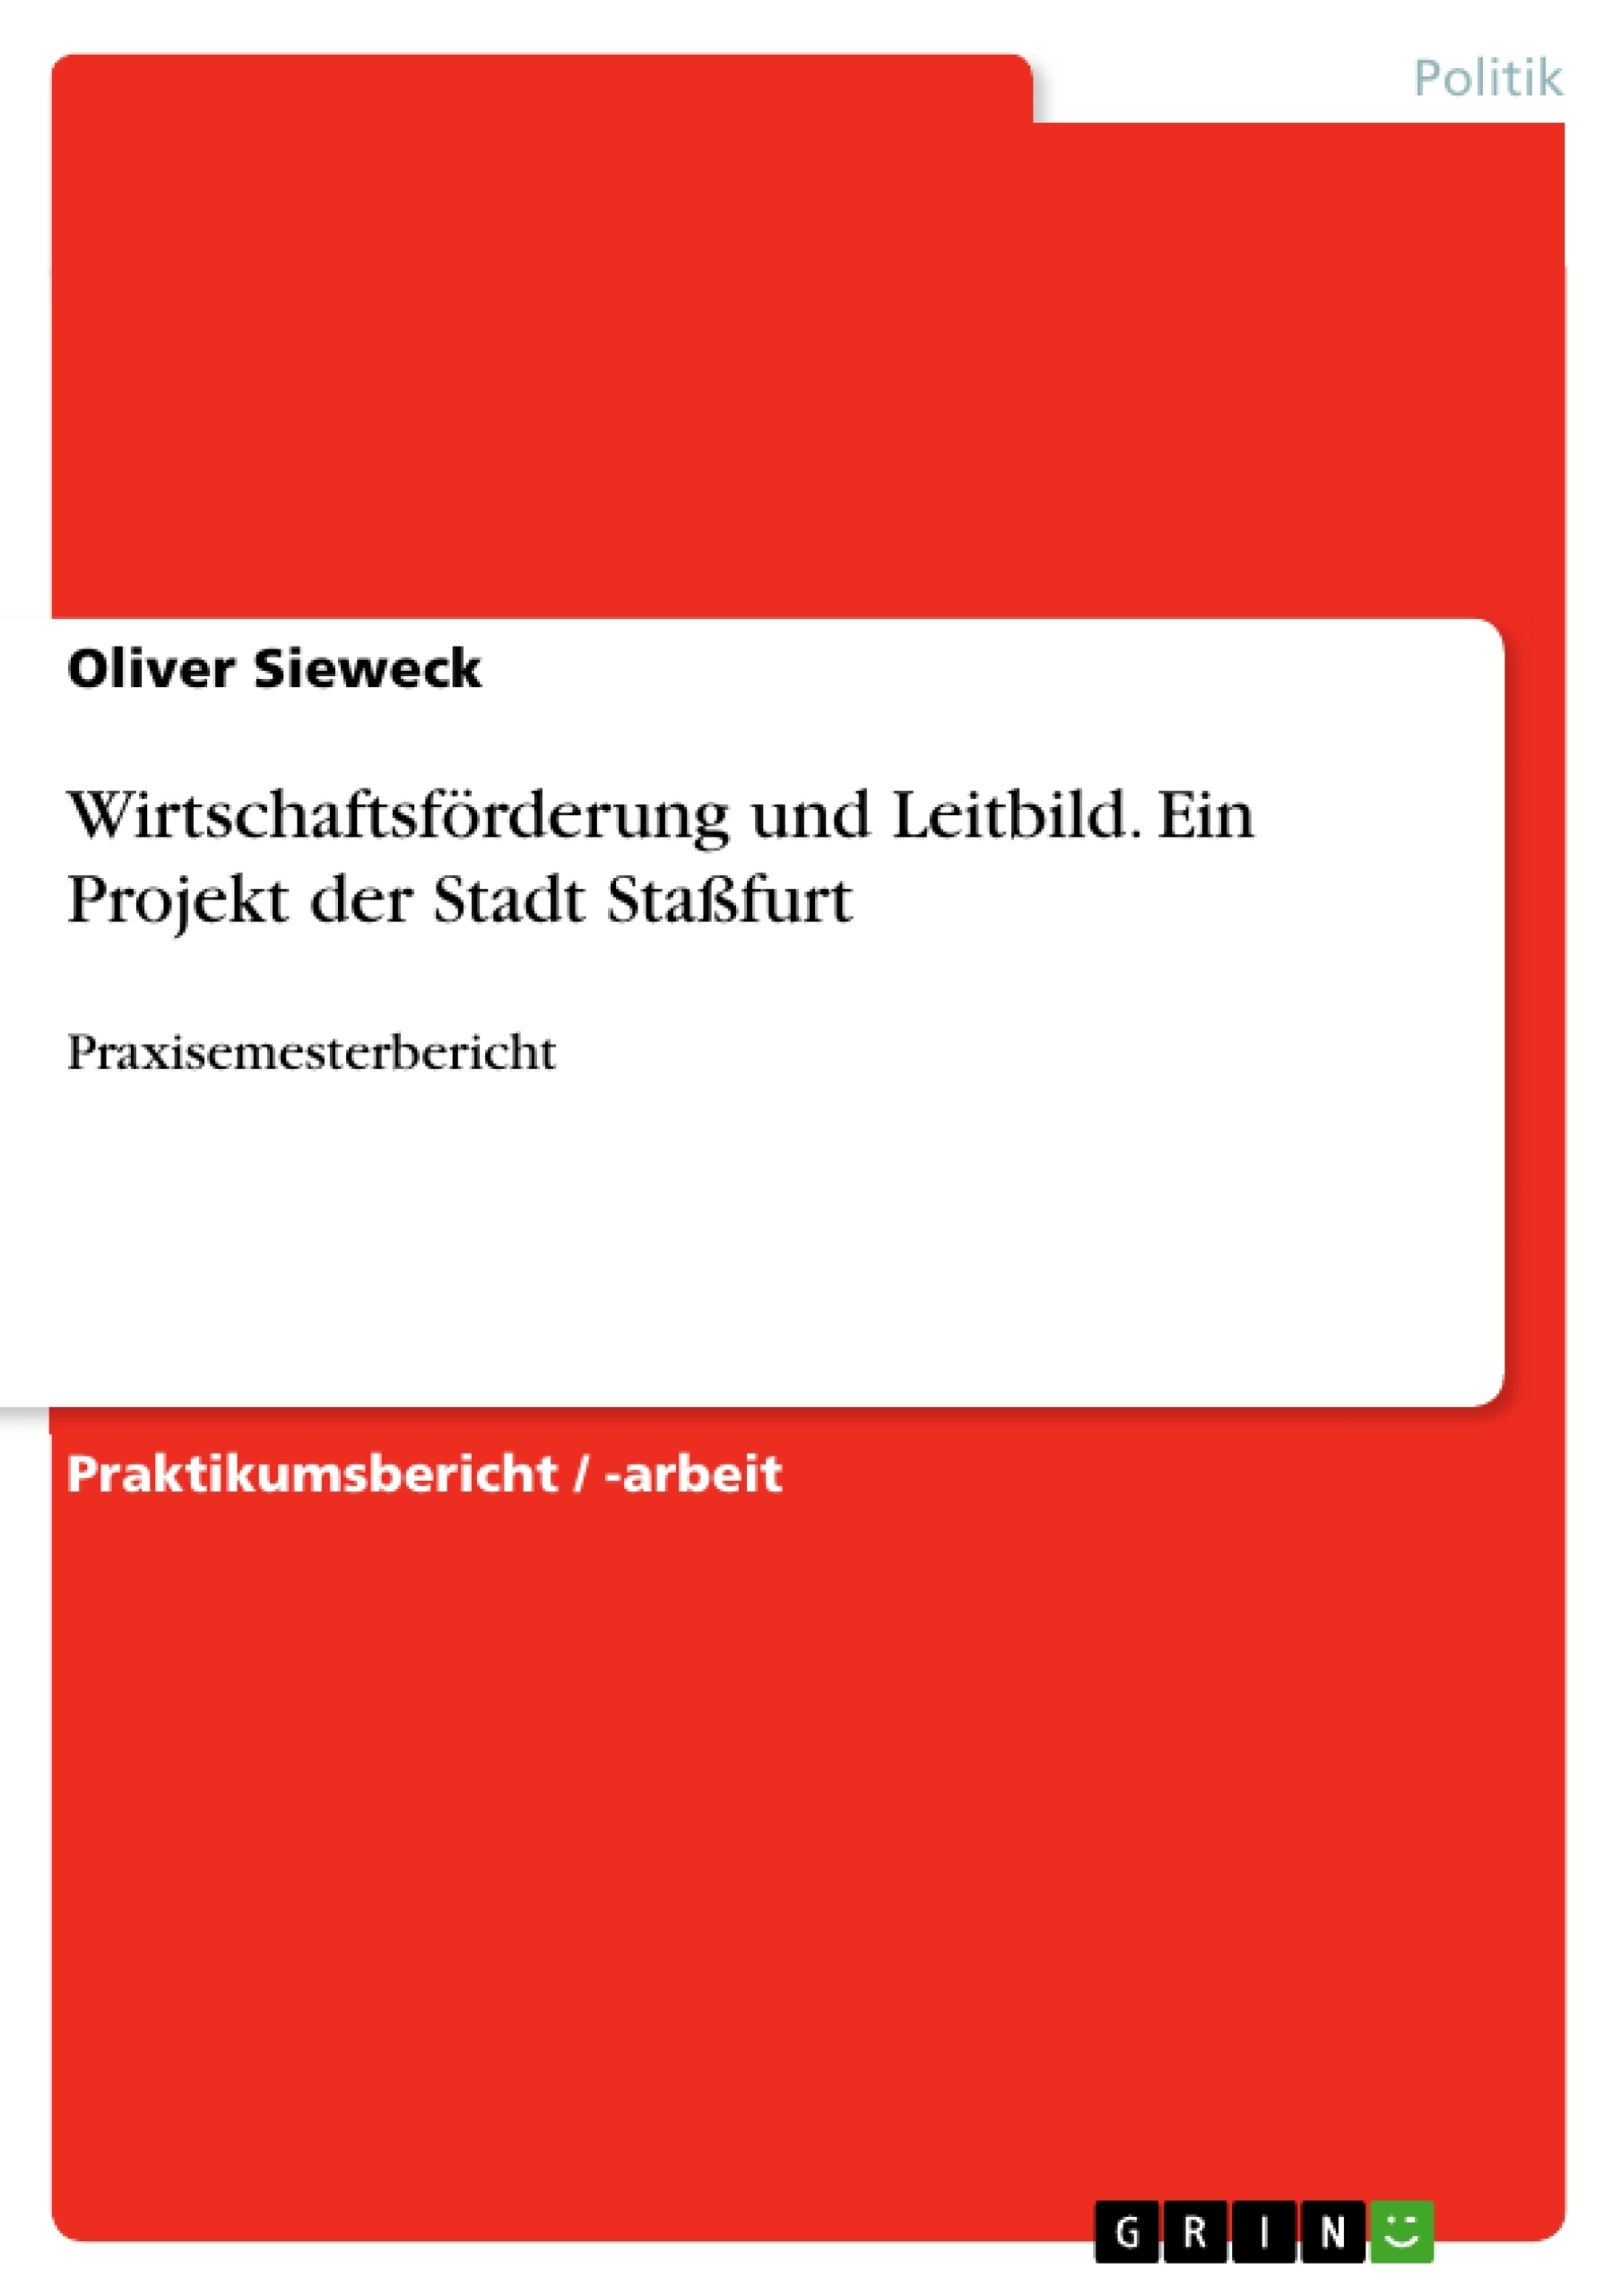 Título: Wirtschaftsförderung und Leitbild. Ein Projekt der Stadt Staßfurt